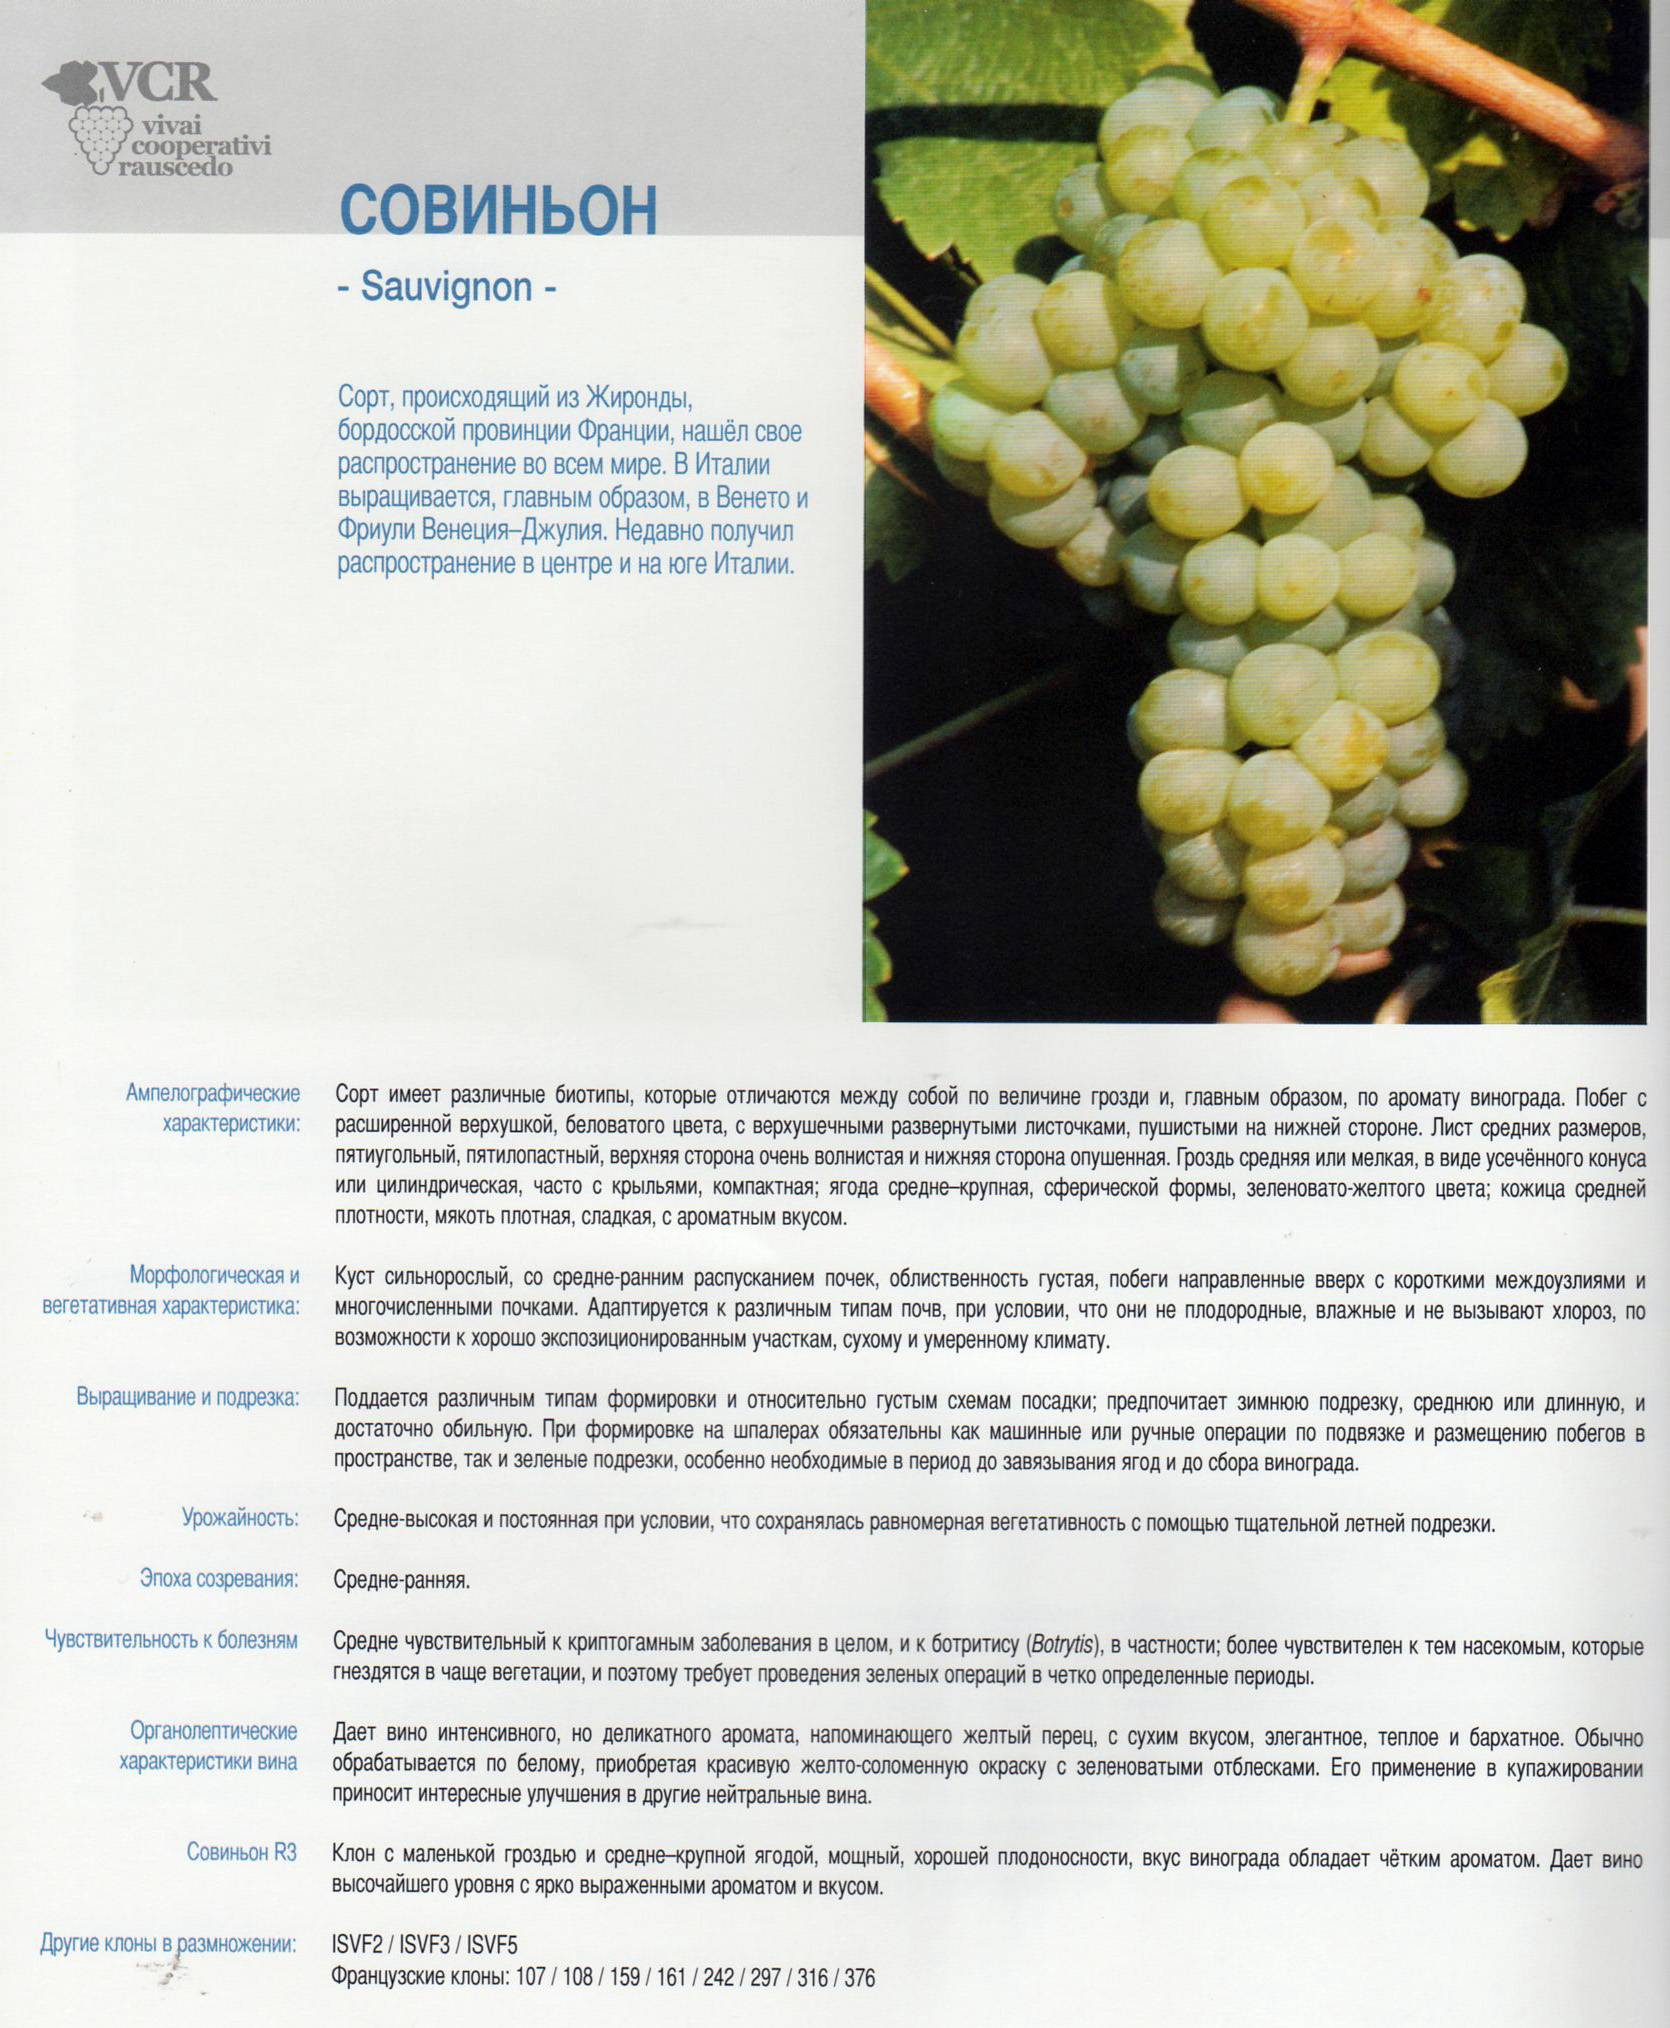 Сорт винограда санджовезе | wine expertise